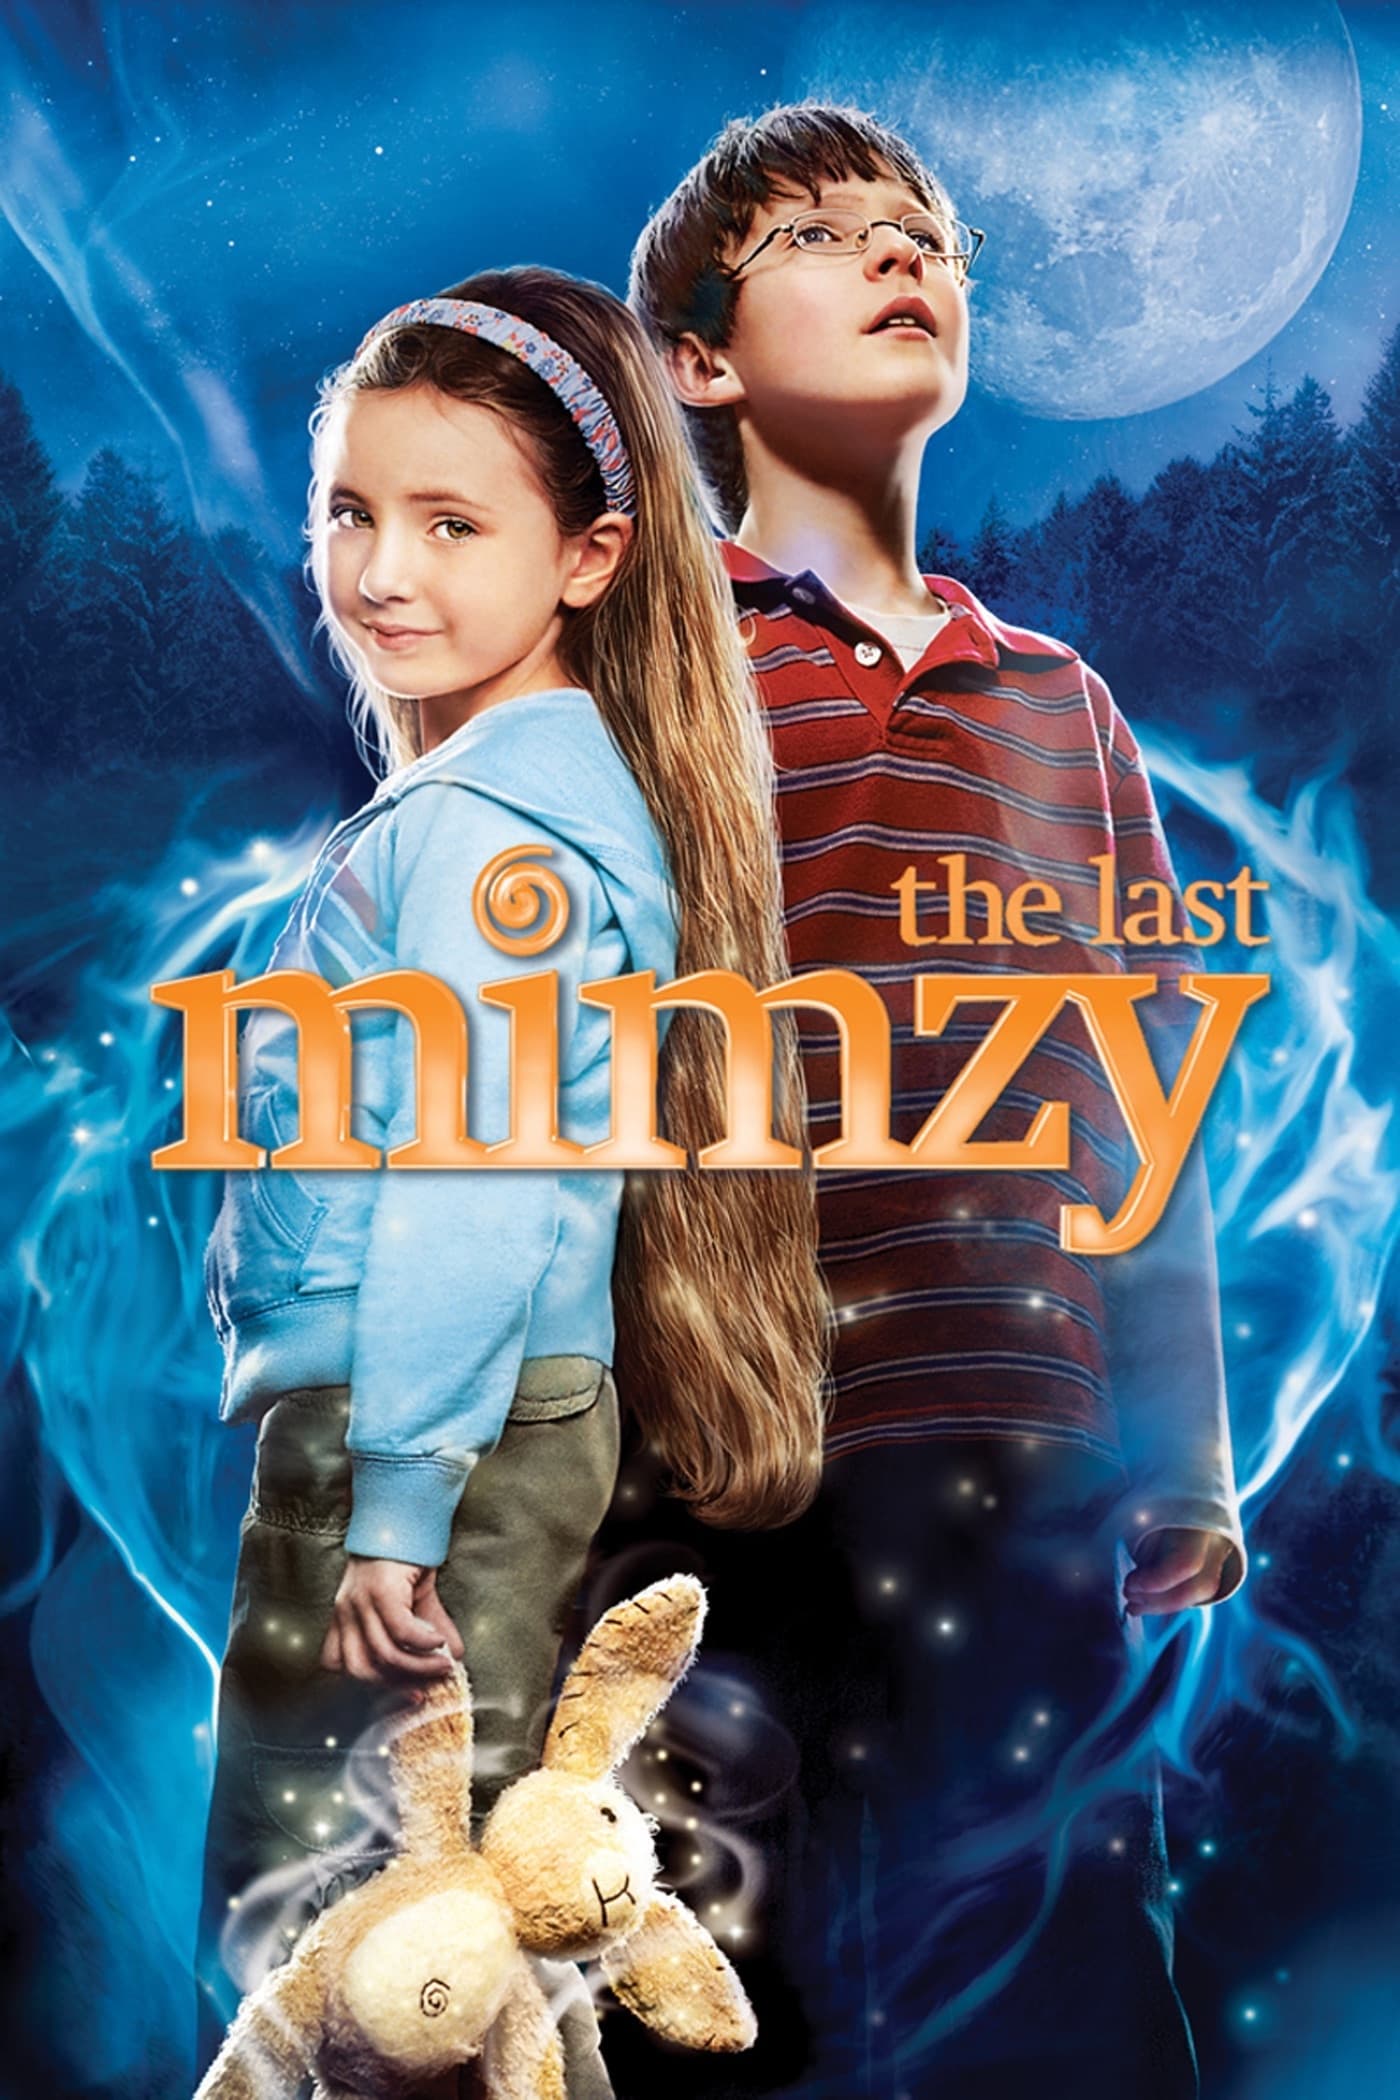 The Last Mimzy (2007)